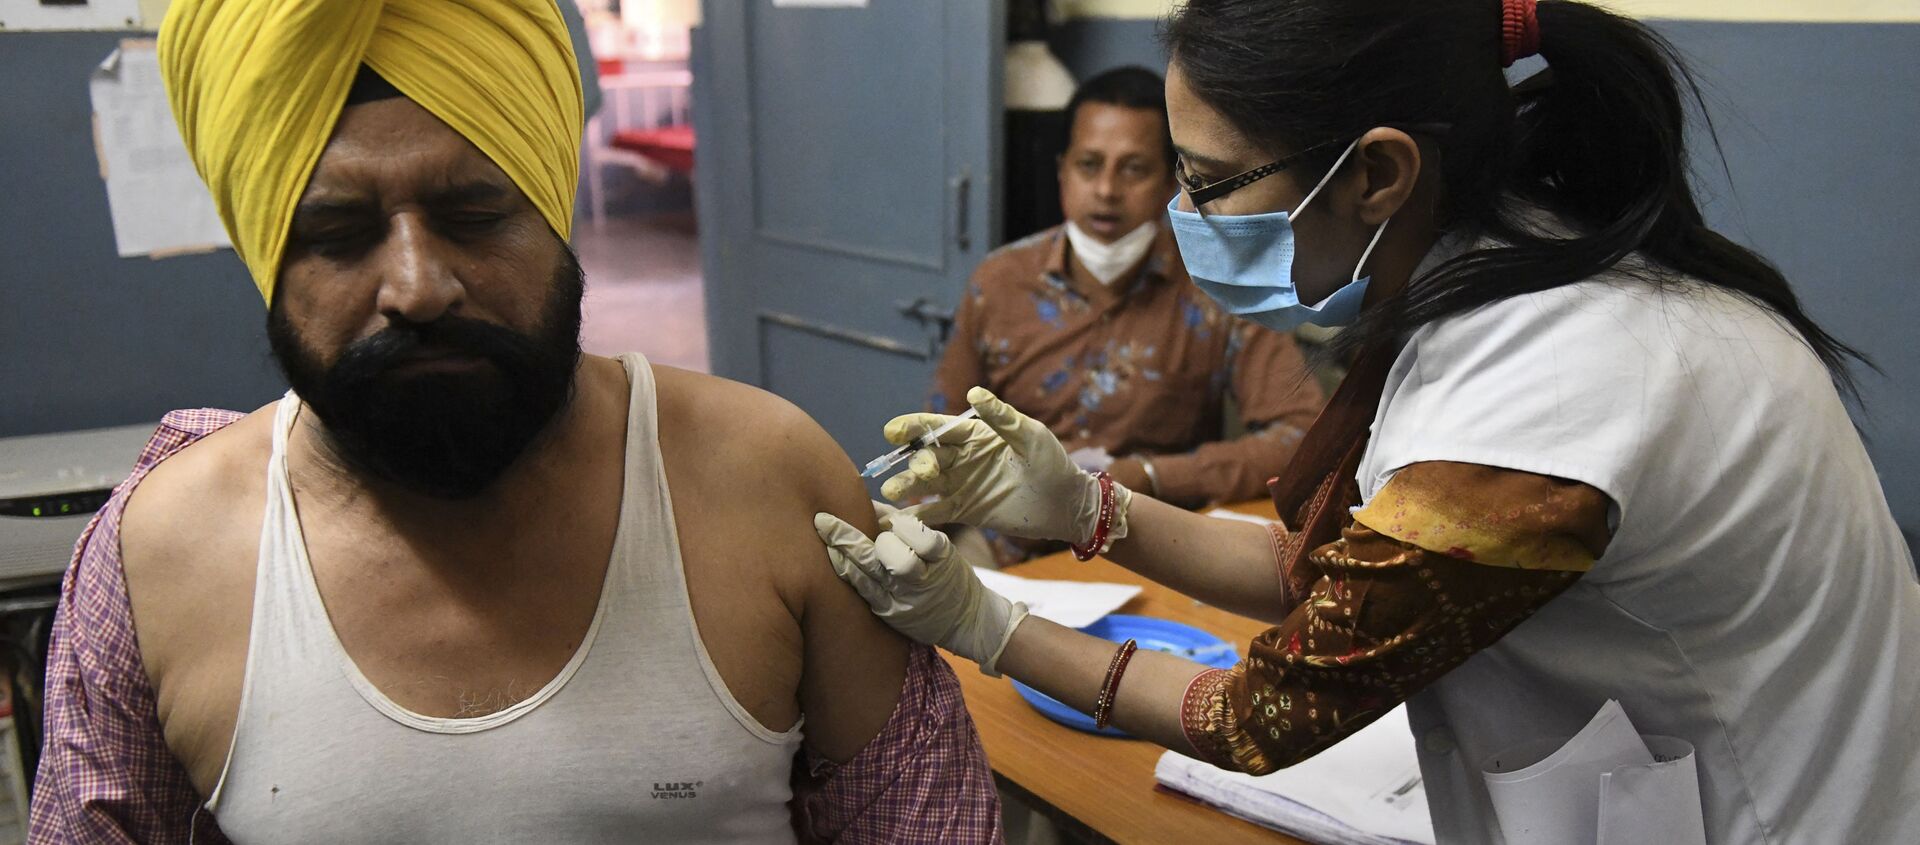 Một nhân viên y tế đã tiêm cho một người đàn ông một liều vắc xin coronavirus Covishield, ChAdOx1 nCoV-19, tại một bệnh viện dân sự ở làng Ajnala, cách Amritsar khoảng 28 km vào ngày 1 tháng 4 năm 2021 - Sputnik Việt Nam, 1920, 19.06.2021